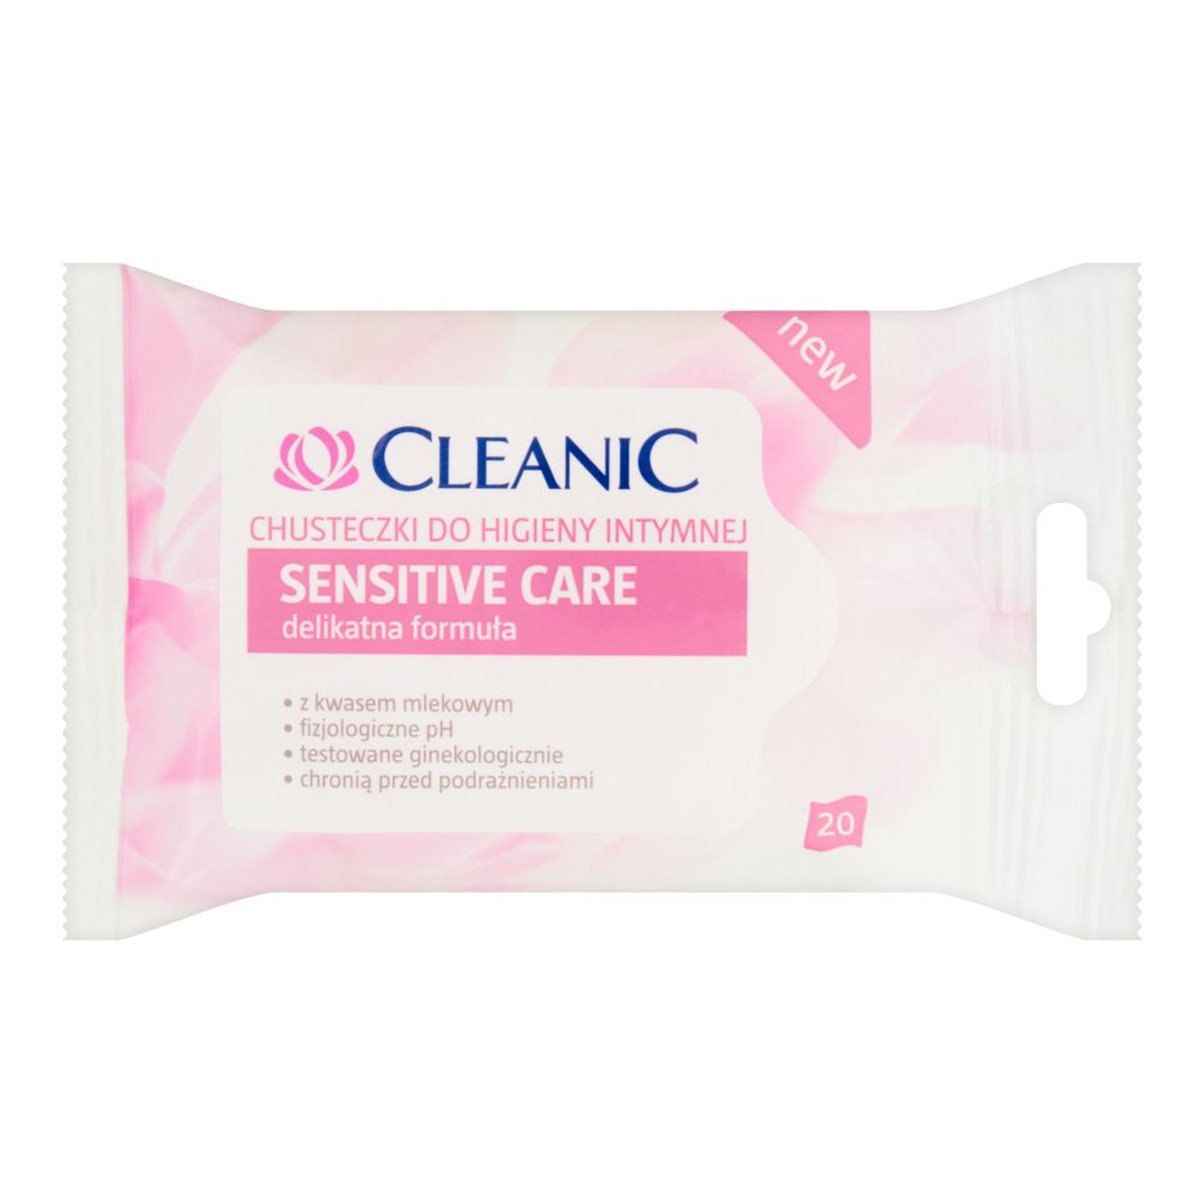 Cleanic Sensitive Care Chusteczki do higieny intymnej 20szt